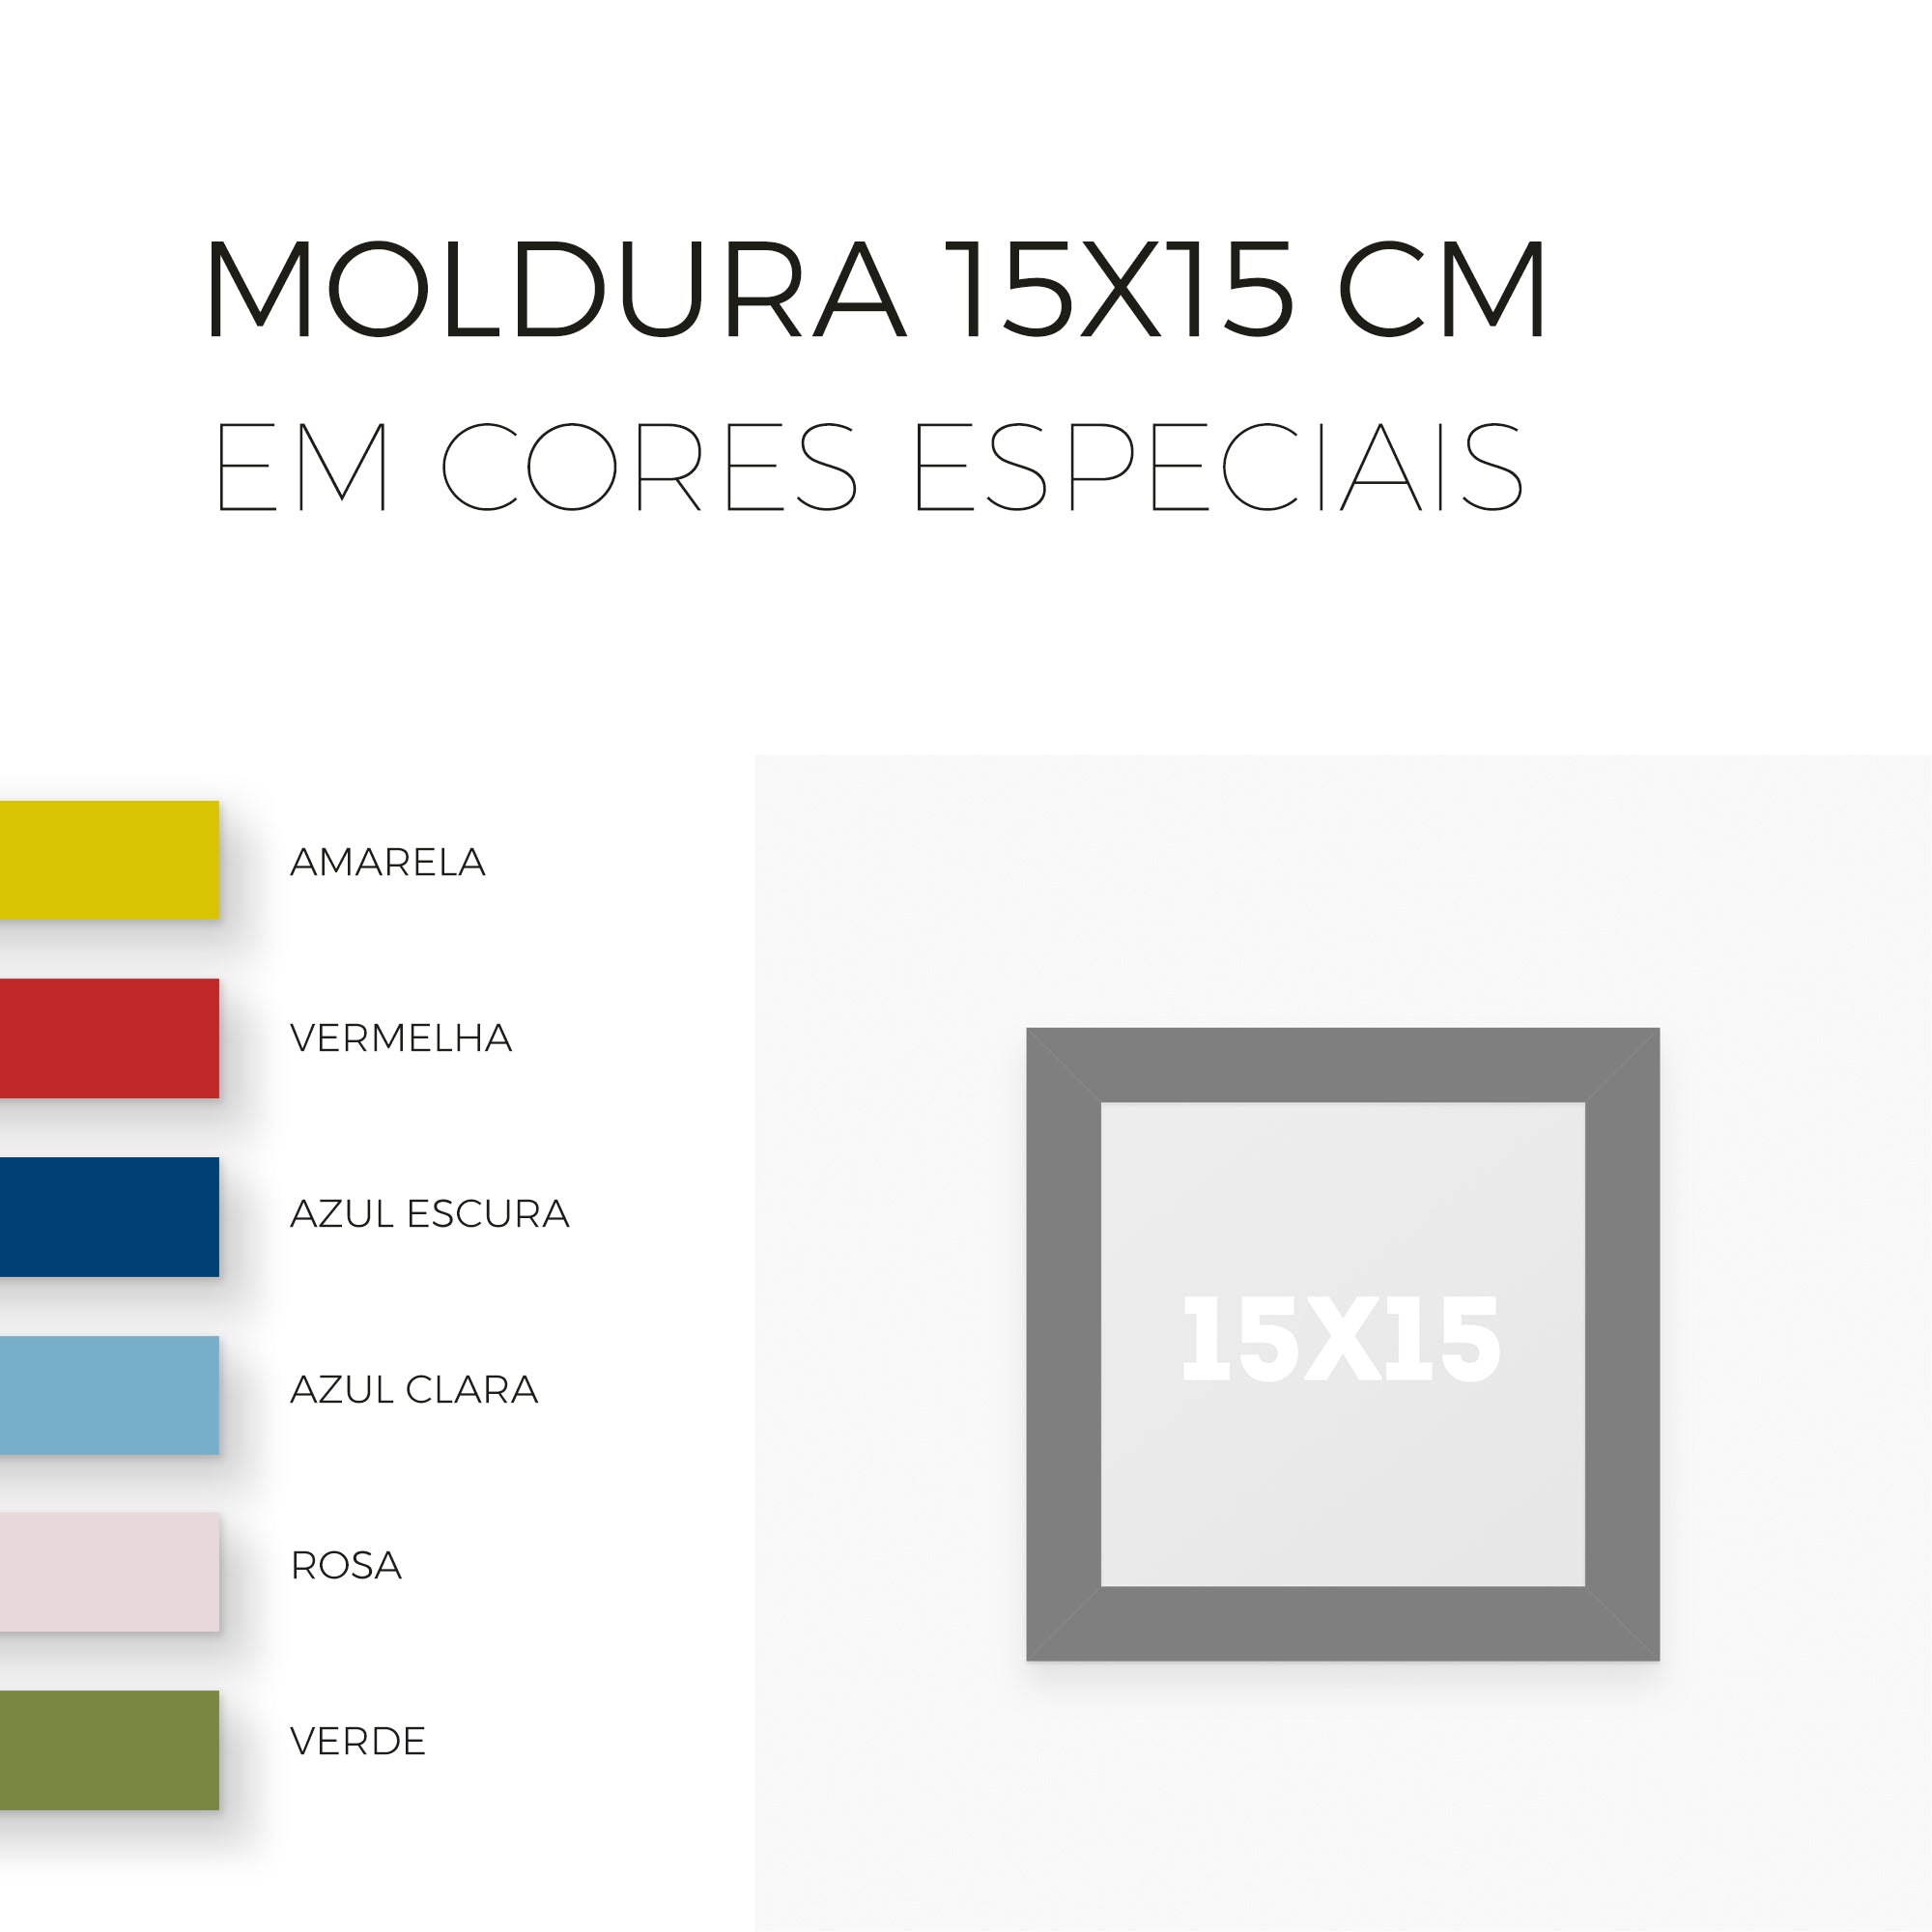 Moldura 15x15